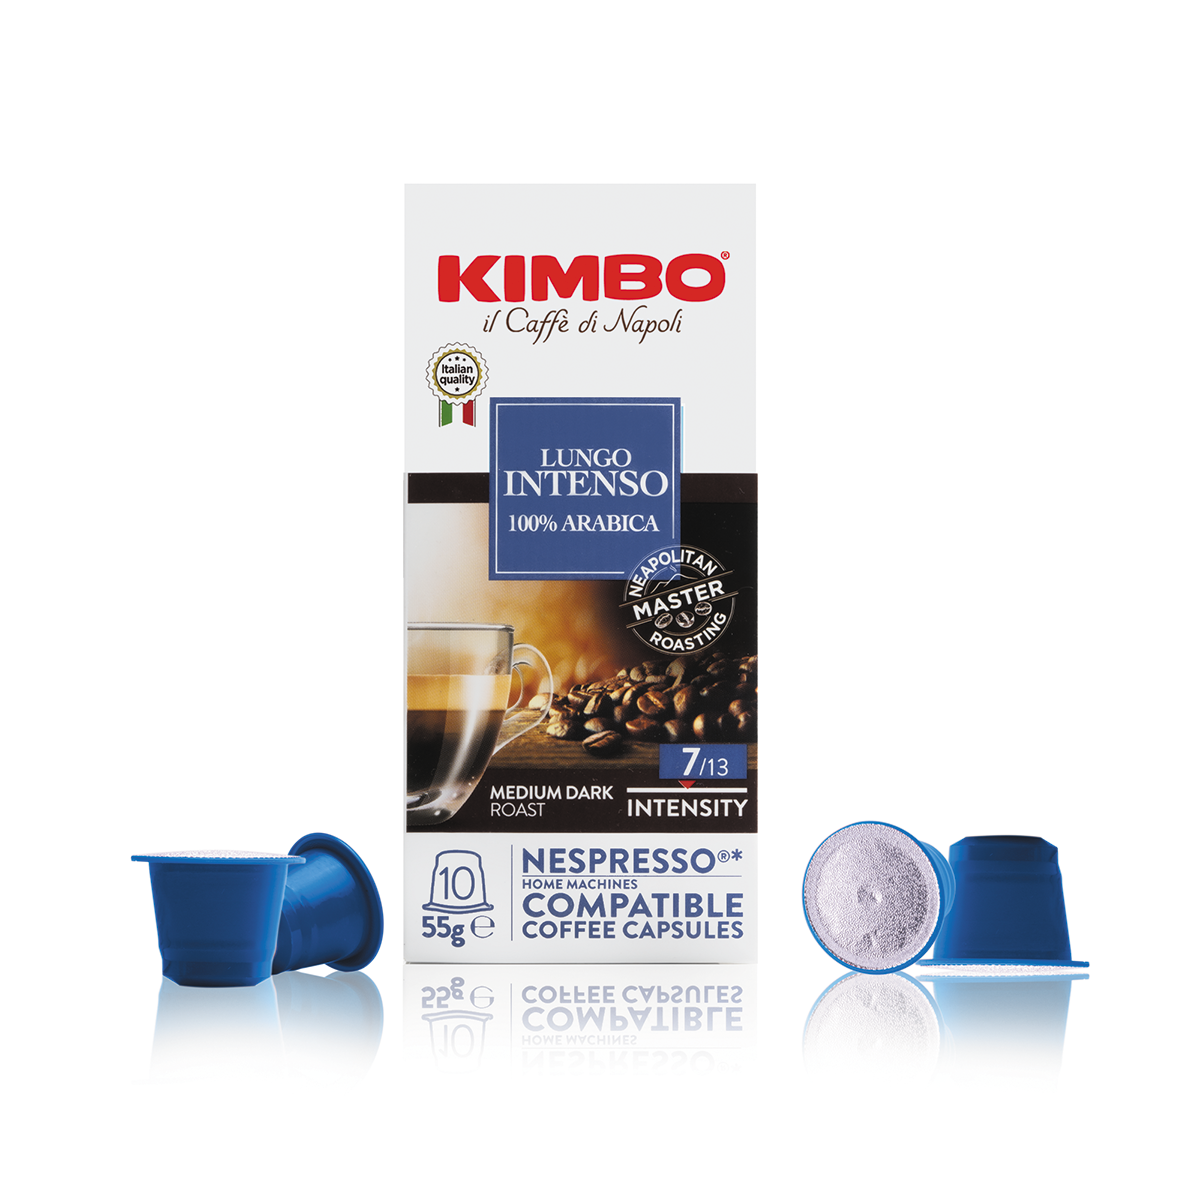 Kimbo il Caffe di Napoli Nespresso Original Compatible Capsules 10ct Lungo Intenso With Capsules